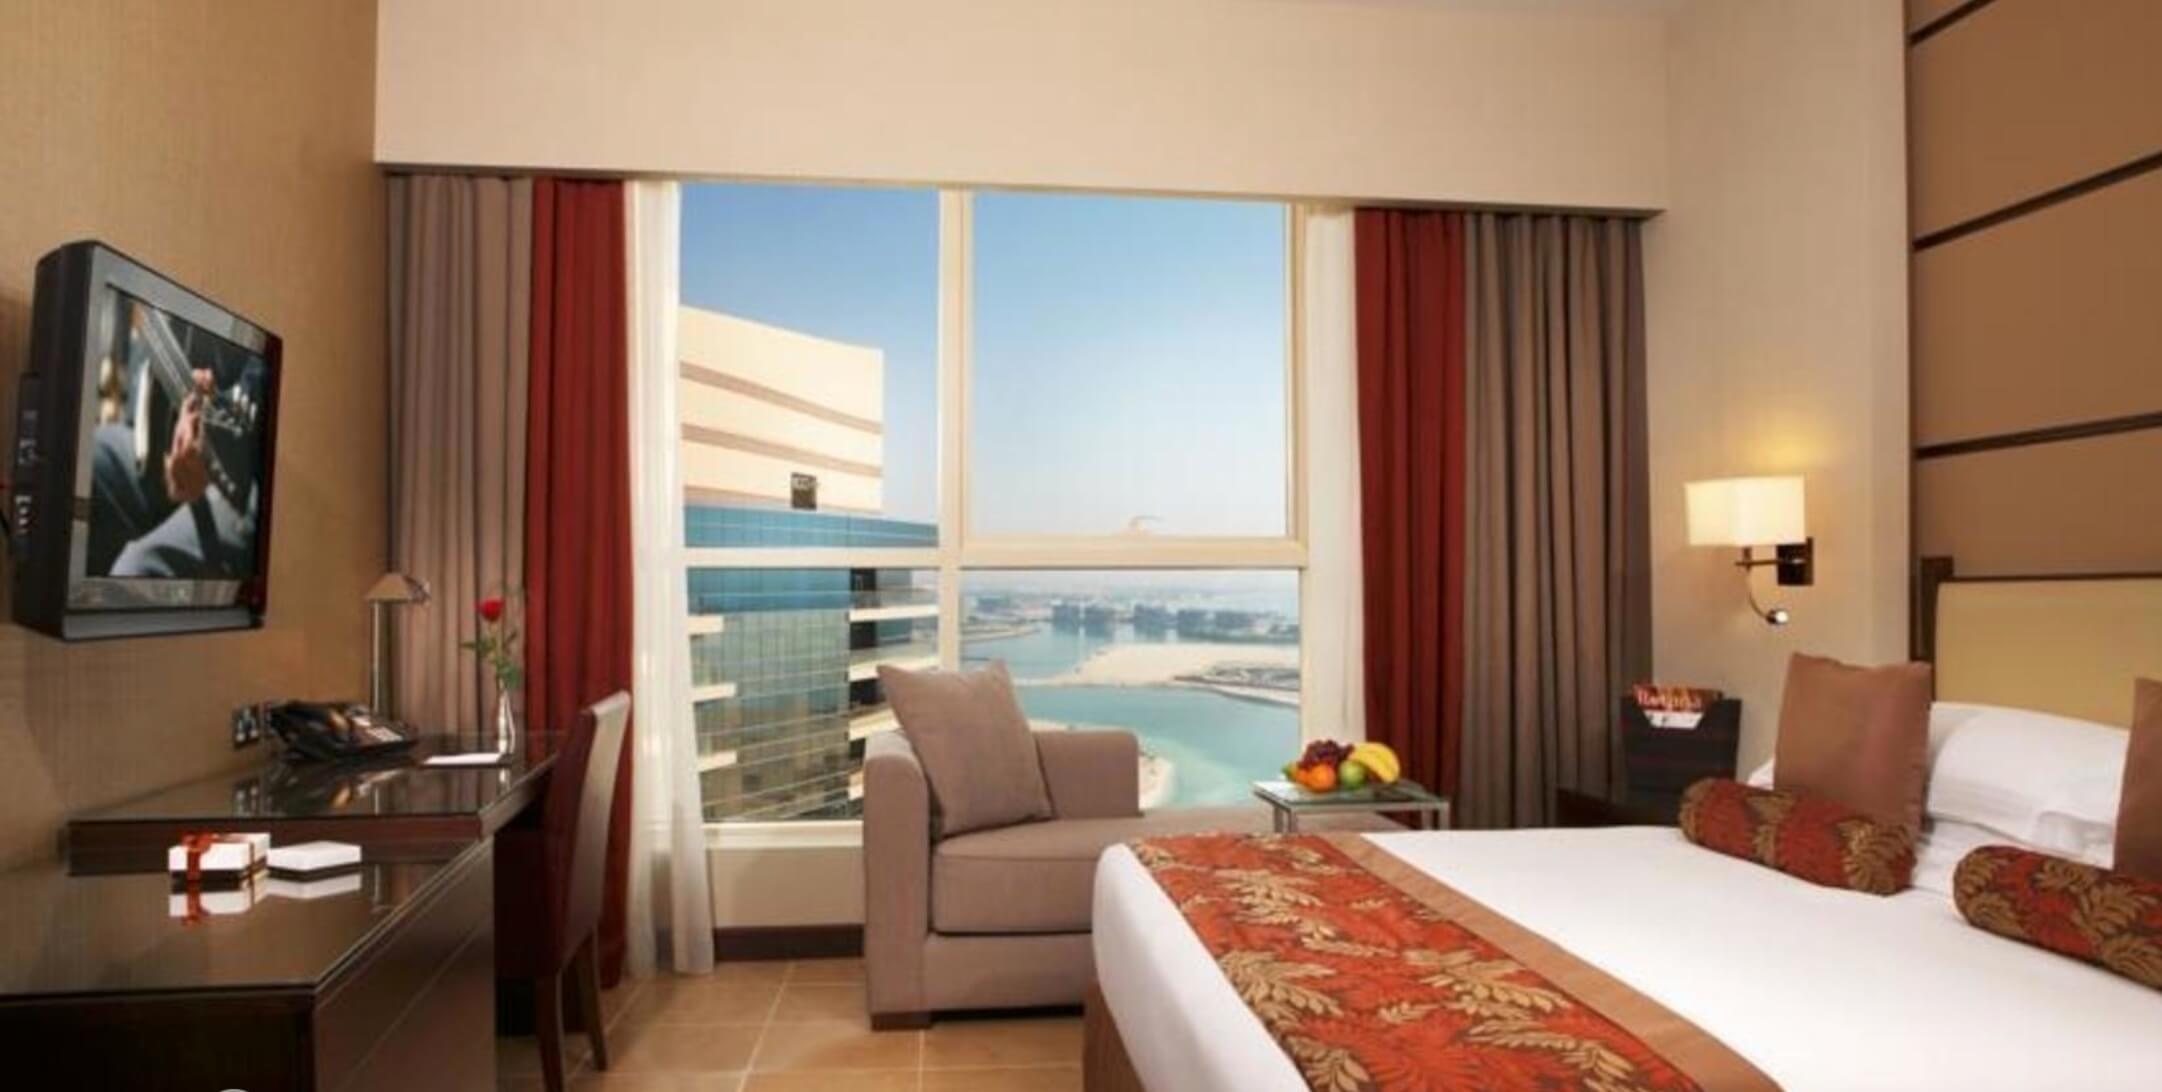 Тур на 5 ночей в Абу-Даби в отель Khalidia Palace Rayhaan Rotana (ОАЭ) с 06.12.17 от 61 390 рублей (BB) на двоих